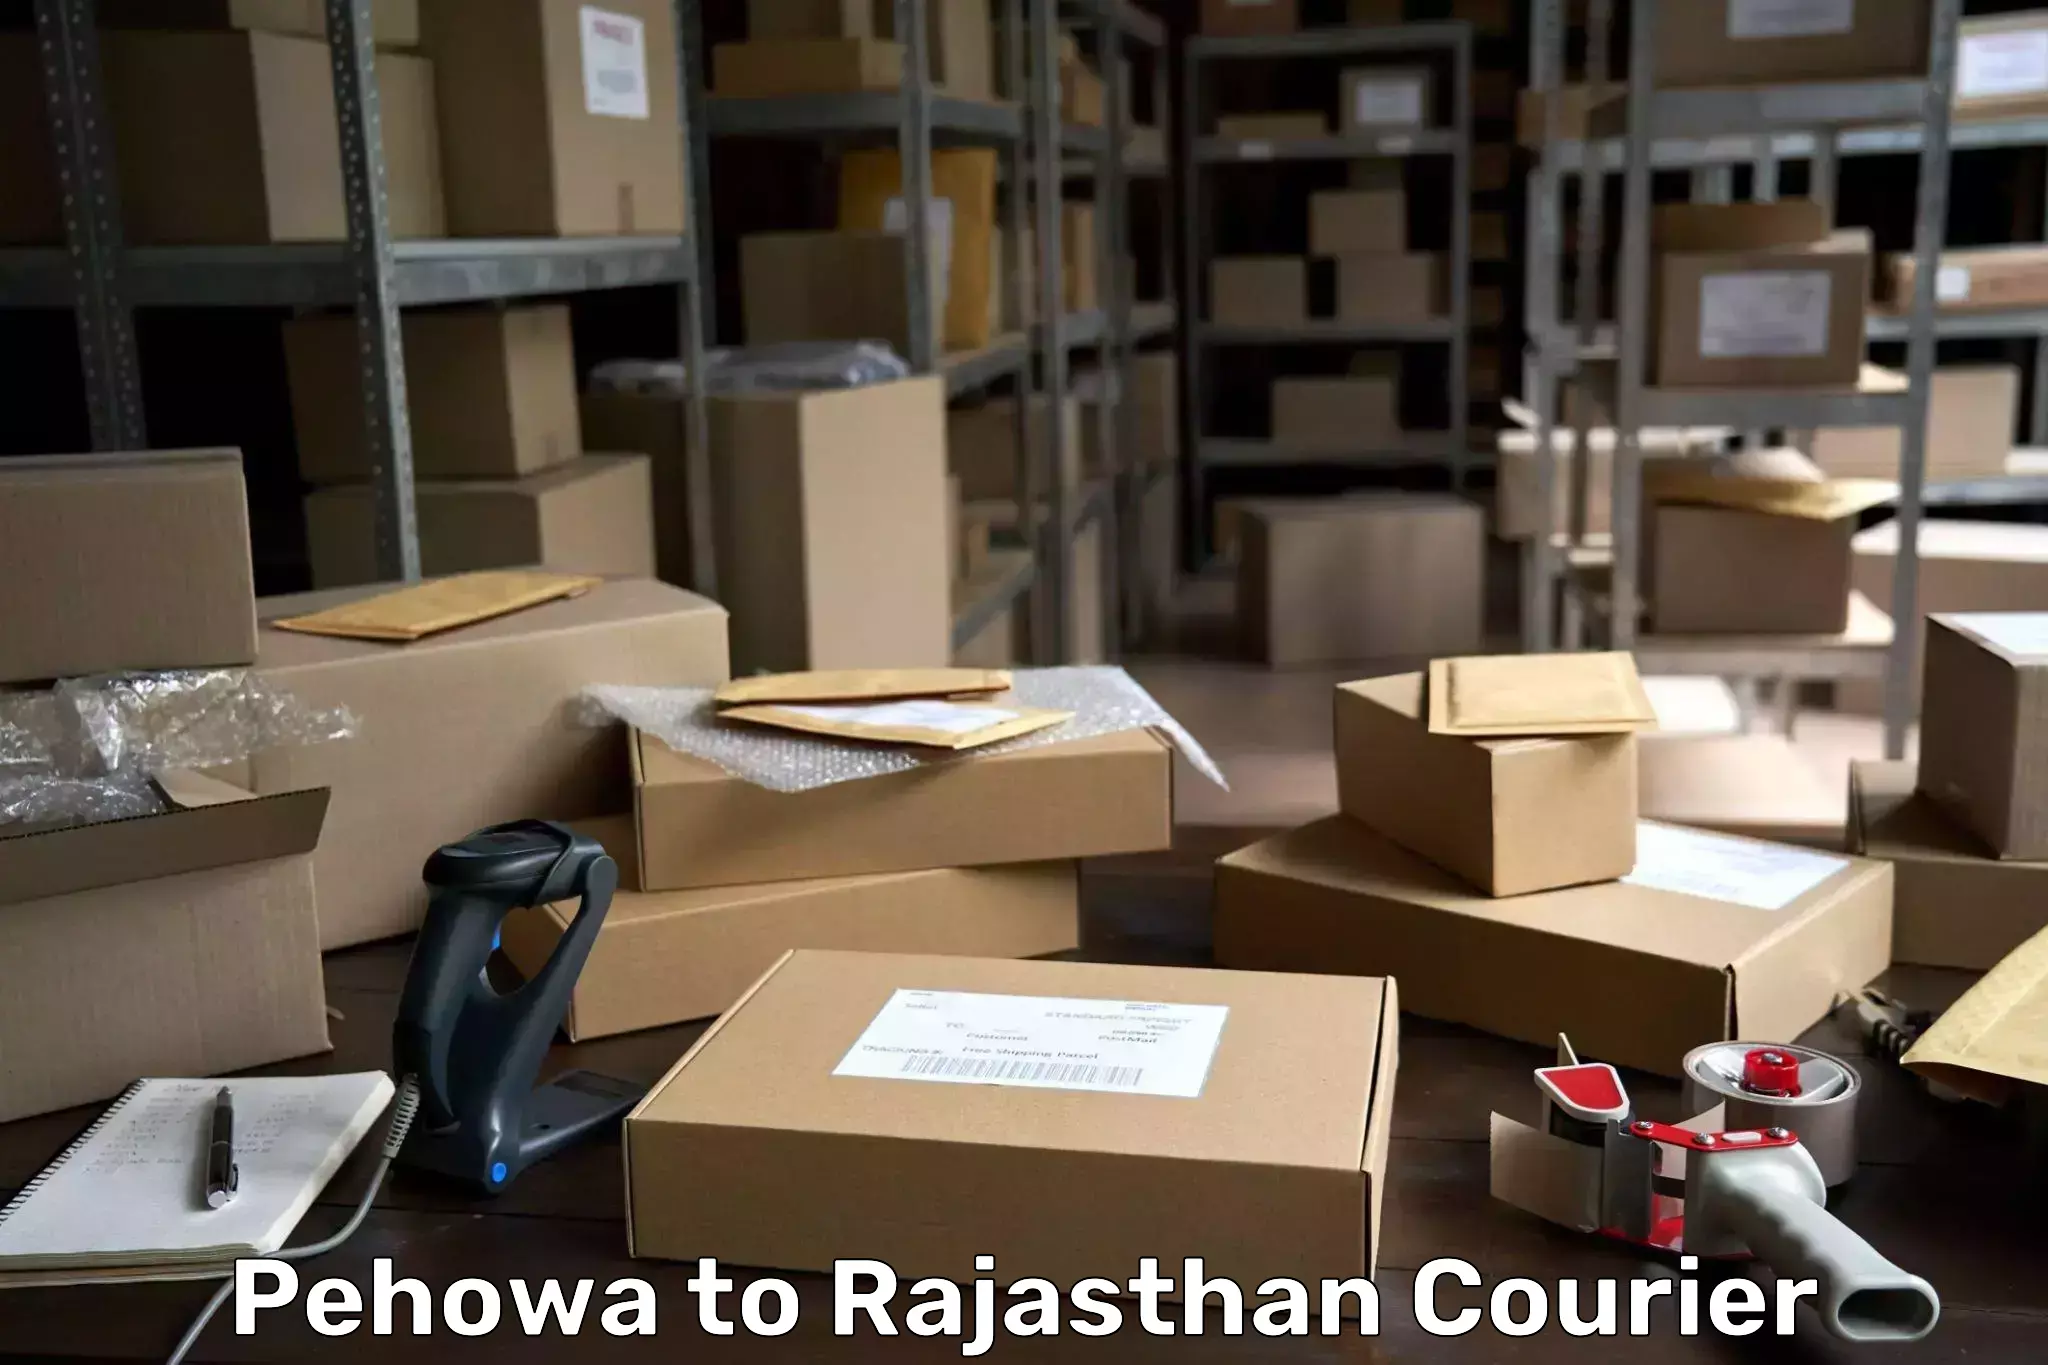 Express postal services Pehowa to Rajasthan